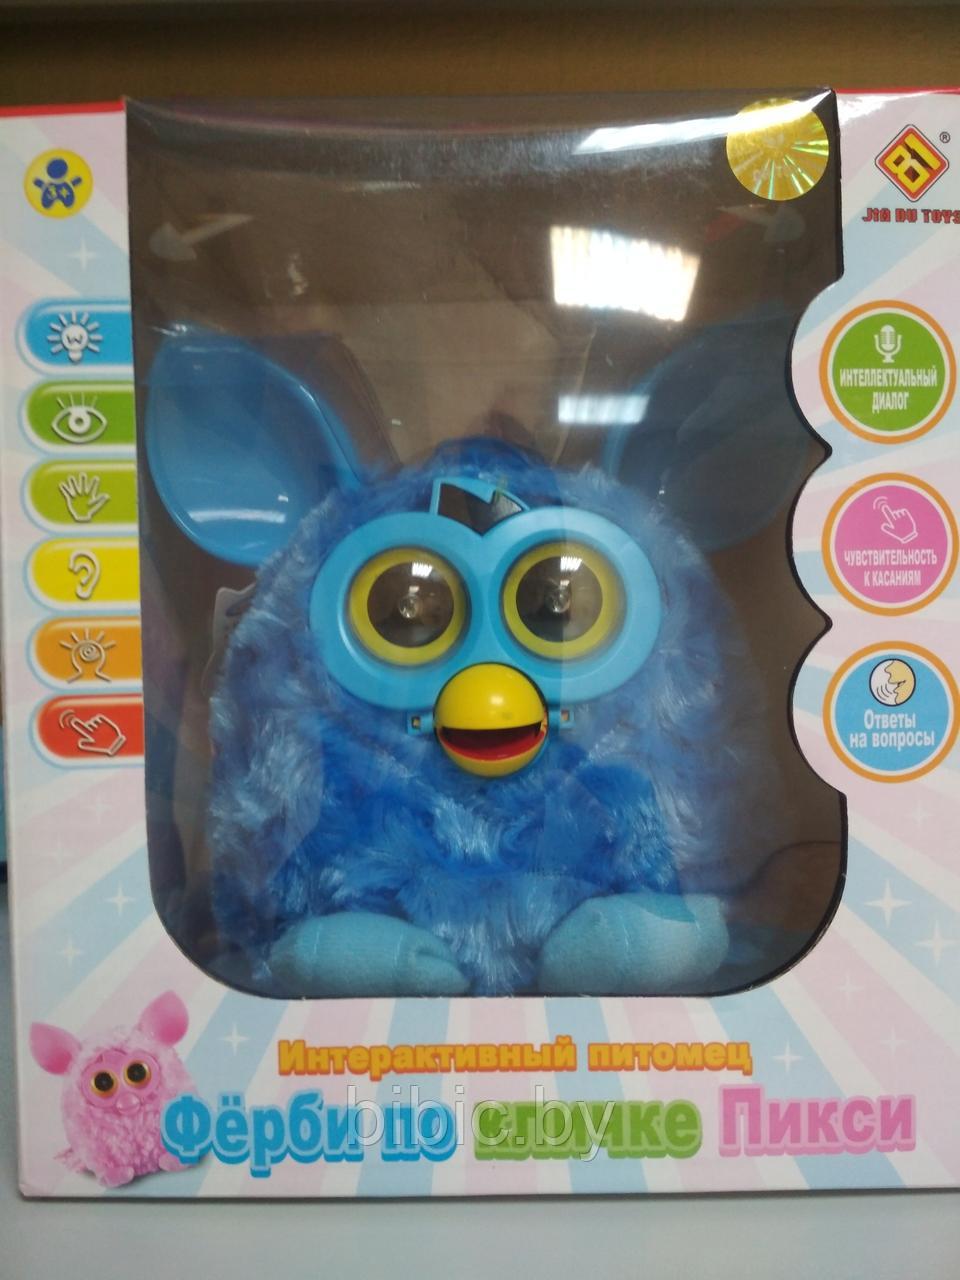 Ферби Furby игрушка интерактивная ( интерактивный питомец ) по кличке Пикси со светом и звуком Синий